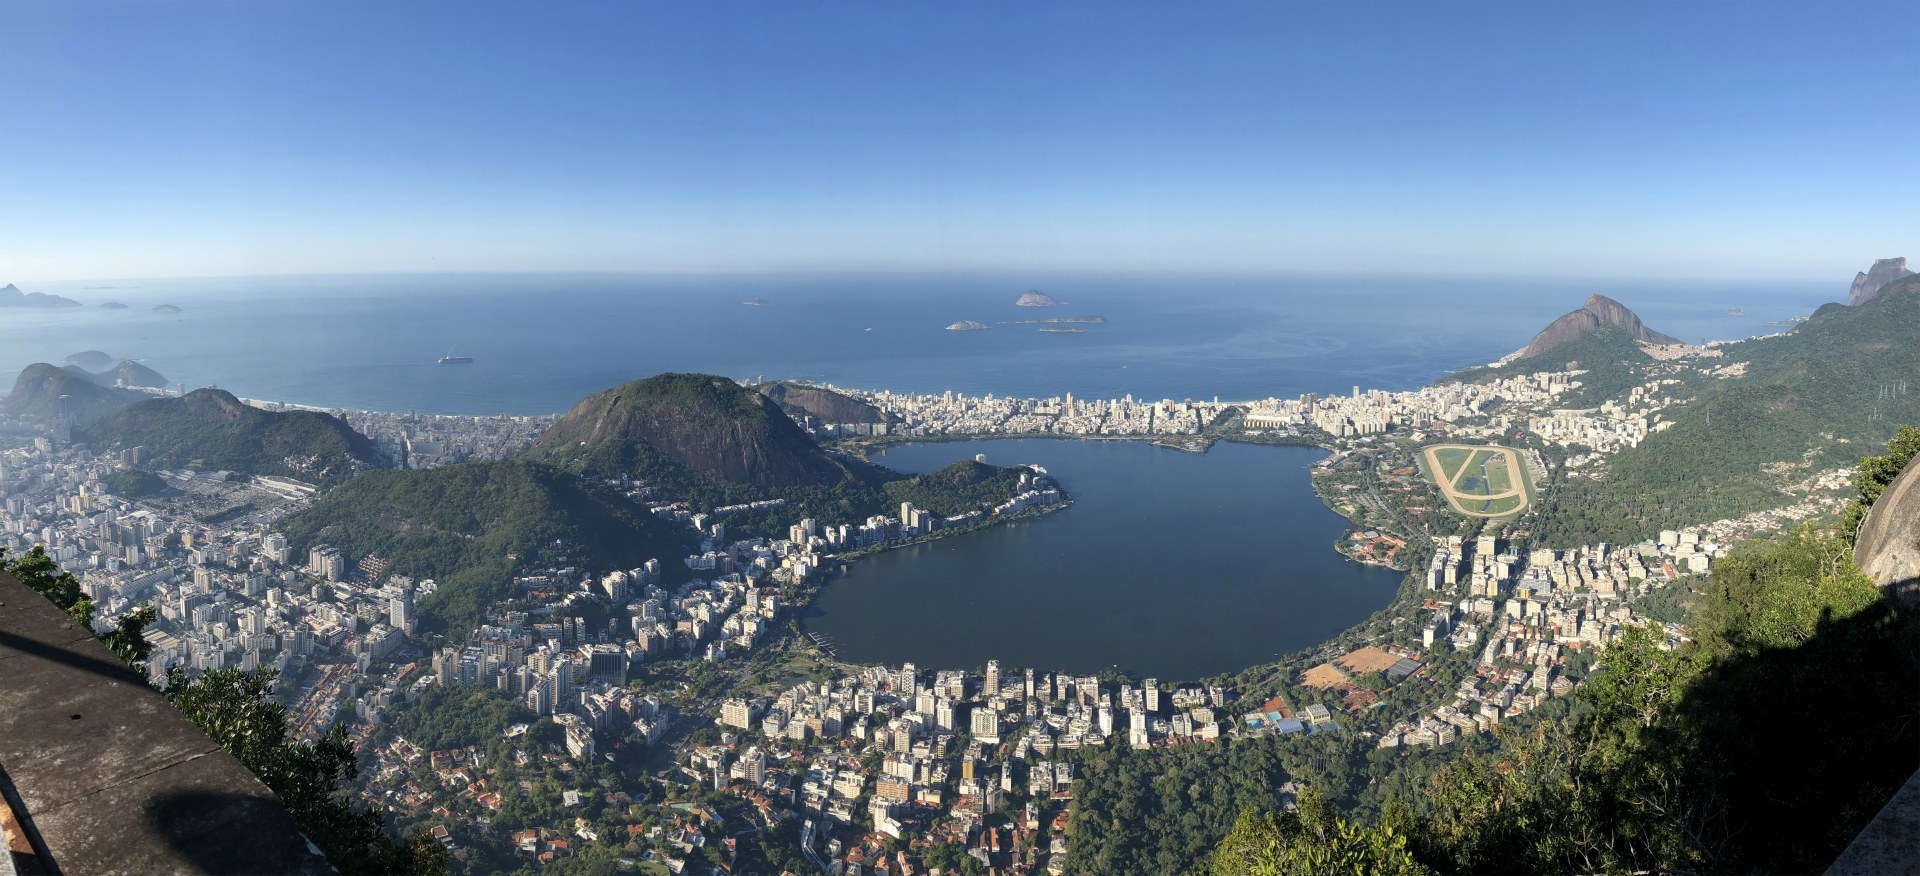 View from Corcovado, Rio de Janeiro